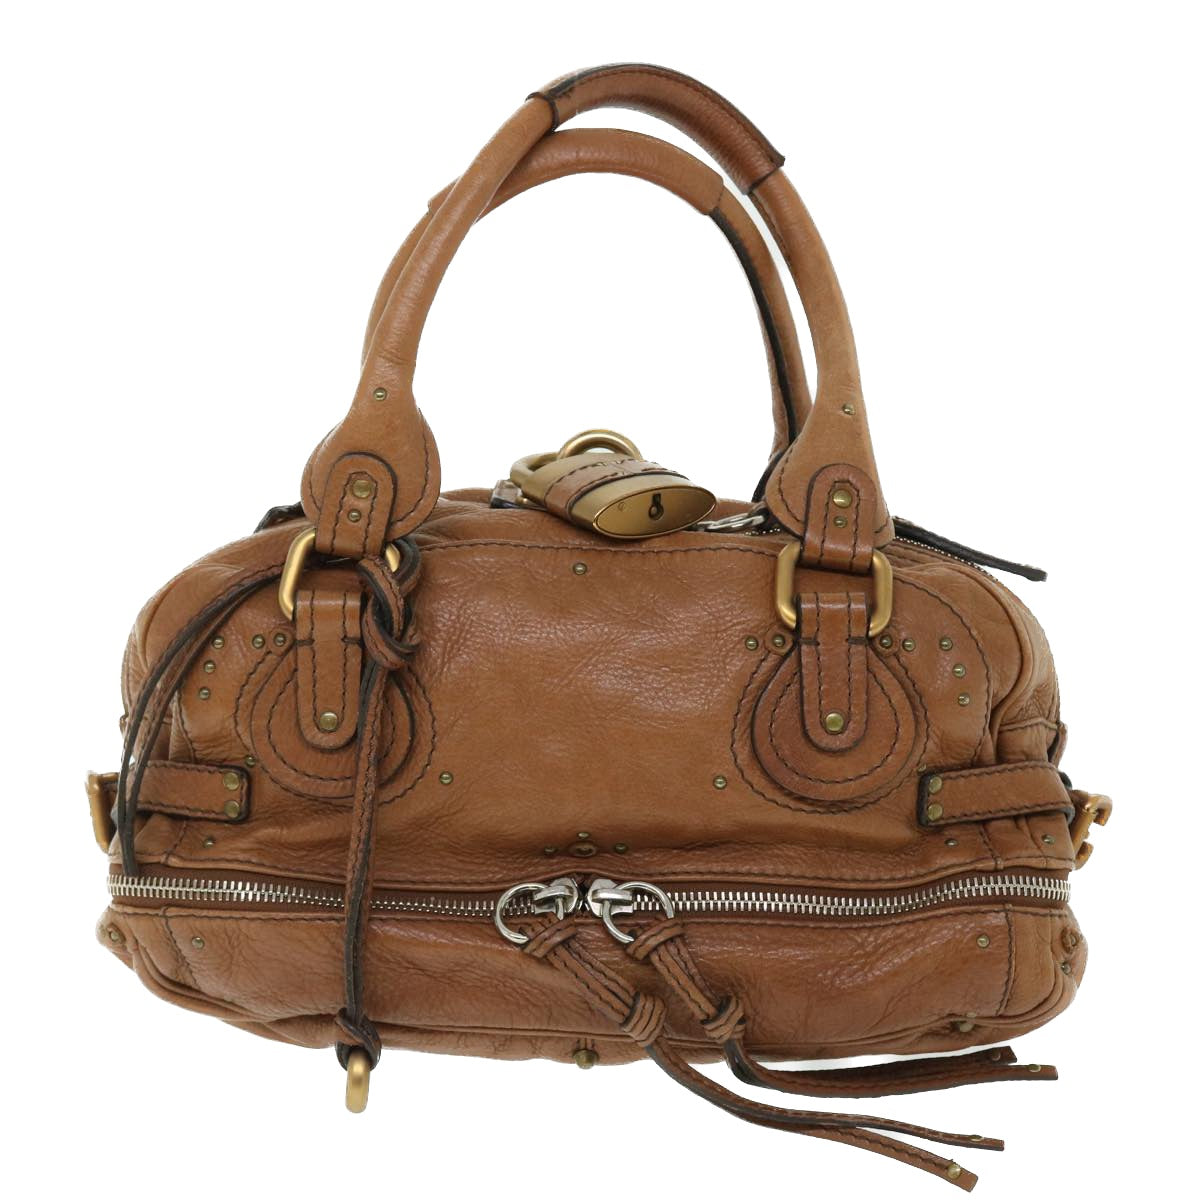 Chloe Paddington Hand Bag Leather Brown 04-06-53 Auth am4849